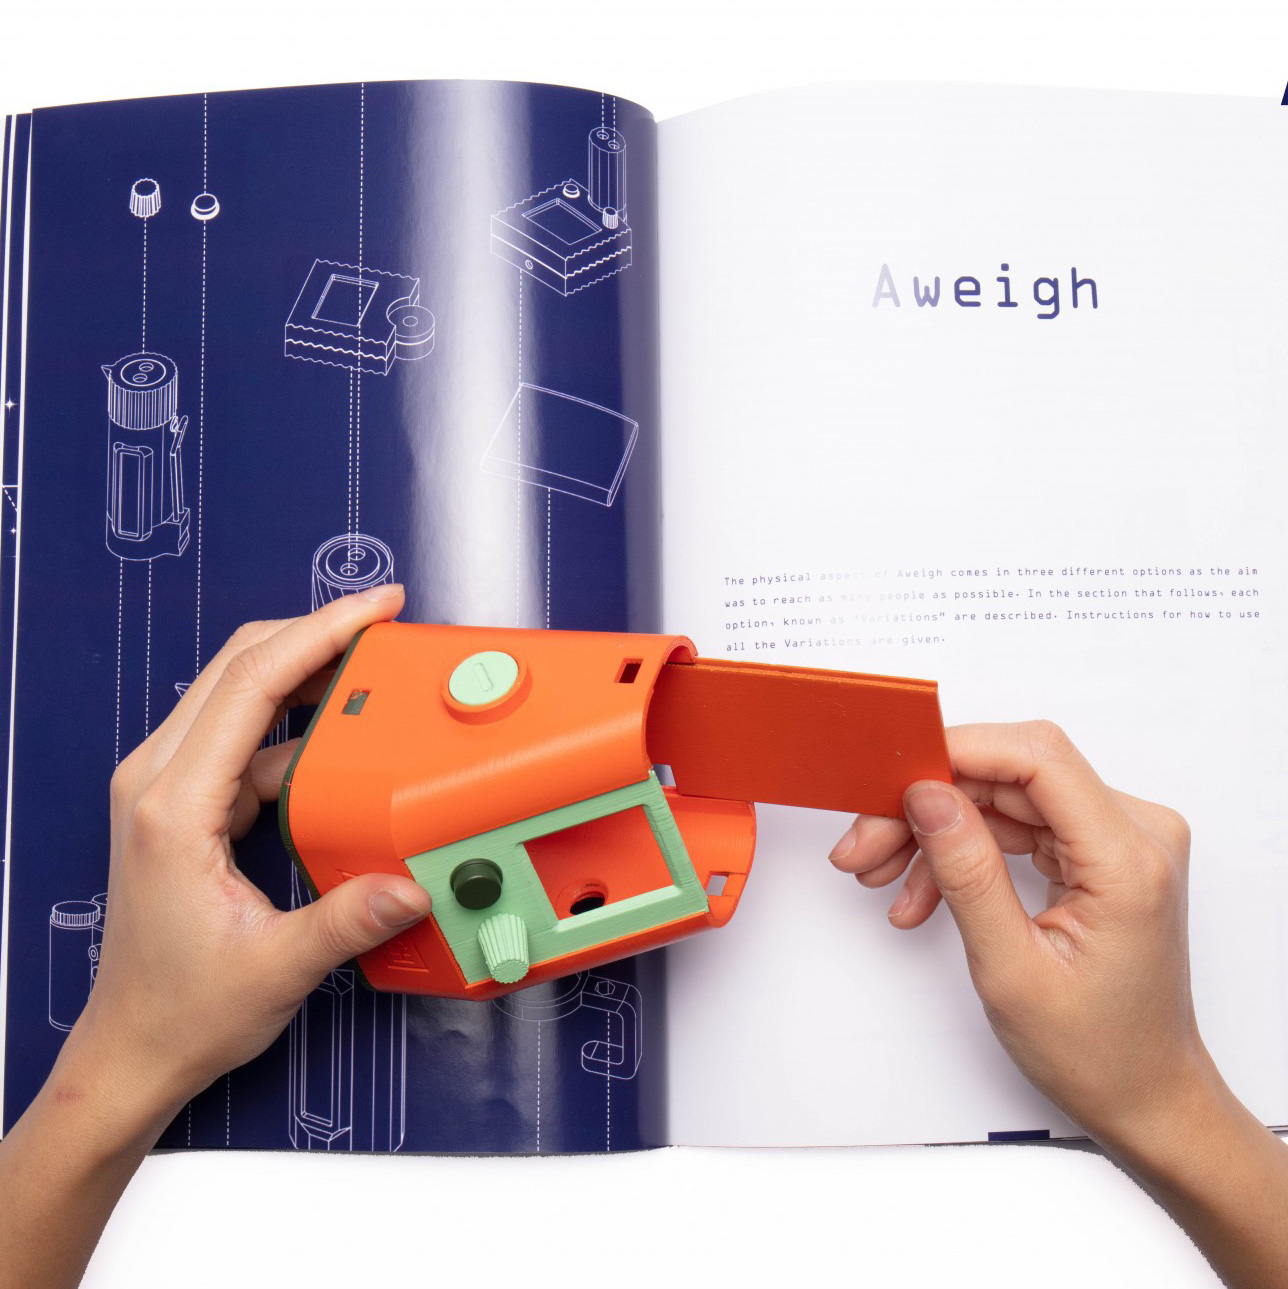 Dezeen Awards 2019 design longlist: Aweigh navigation system by Aweigh